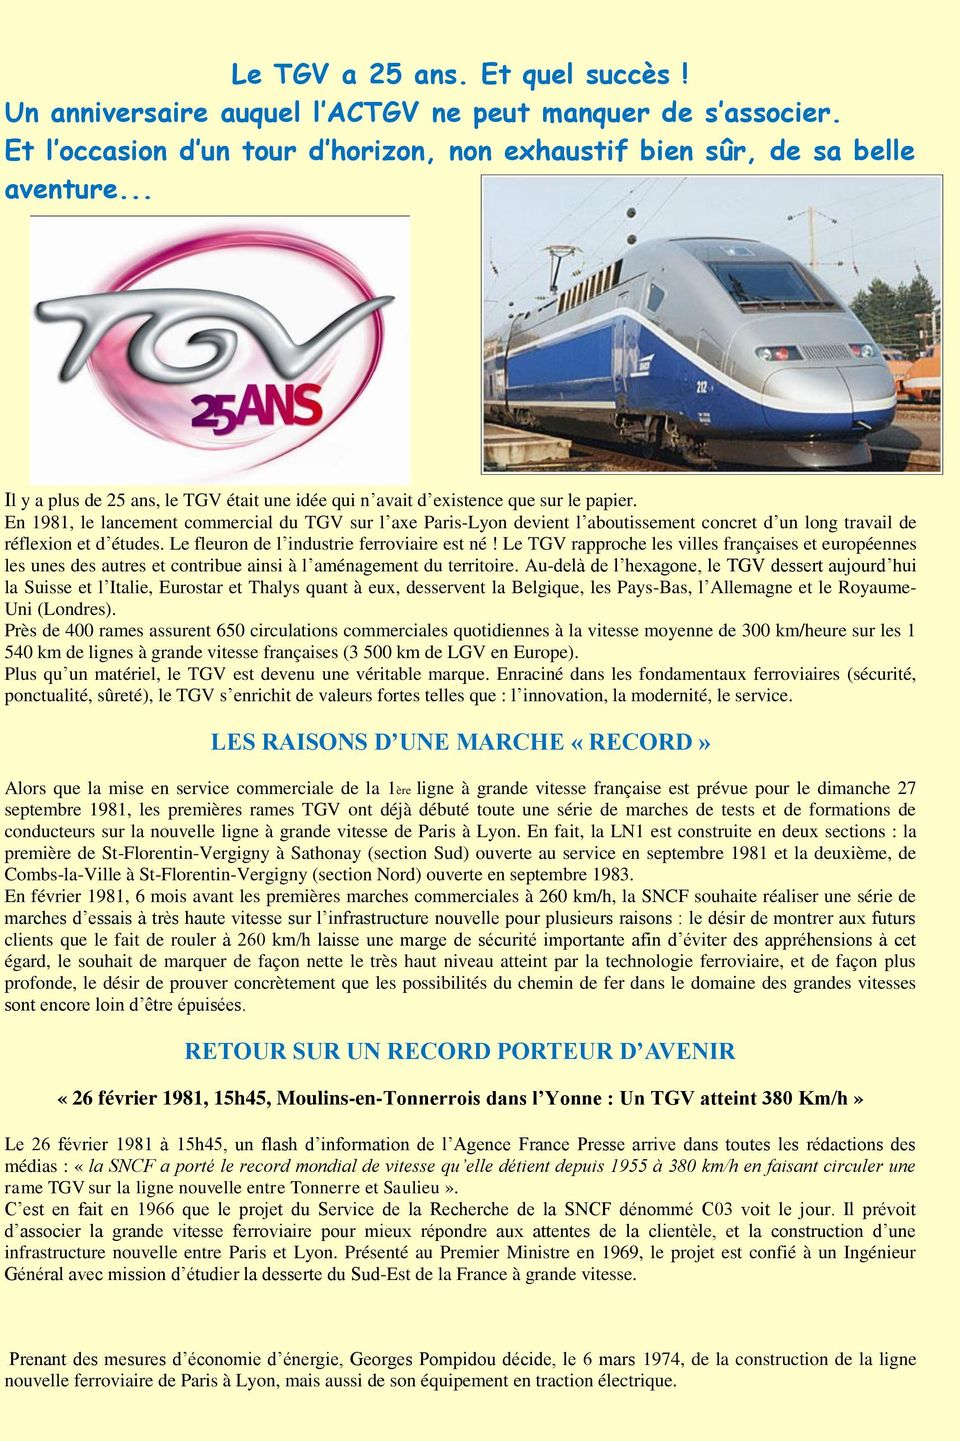 En 1981, le lancement commercial du TGV sur l axe Paris-Lyon devient l aboutissement concret d un long travail de réflexion et d études. Le fleuron de l industrie ferroviaire est né!